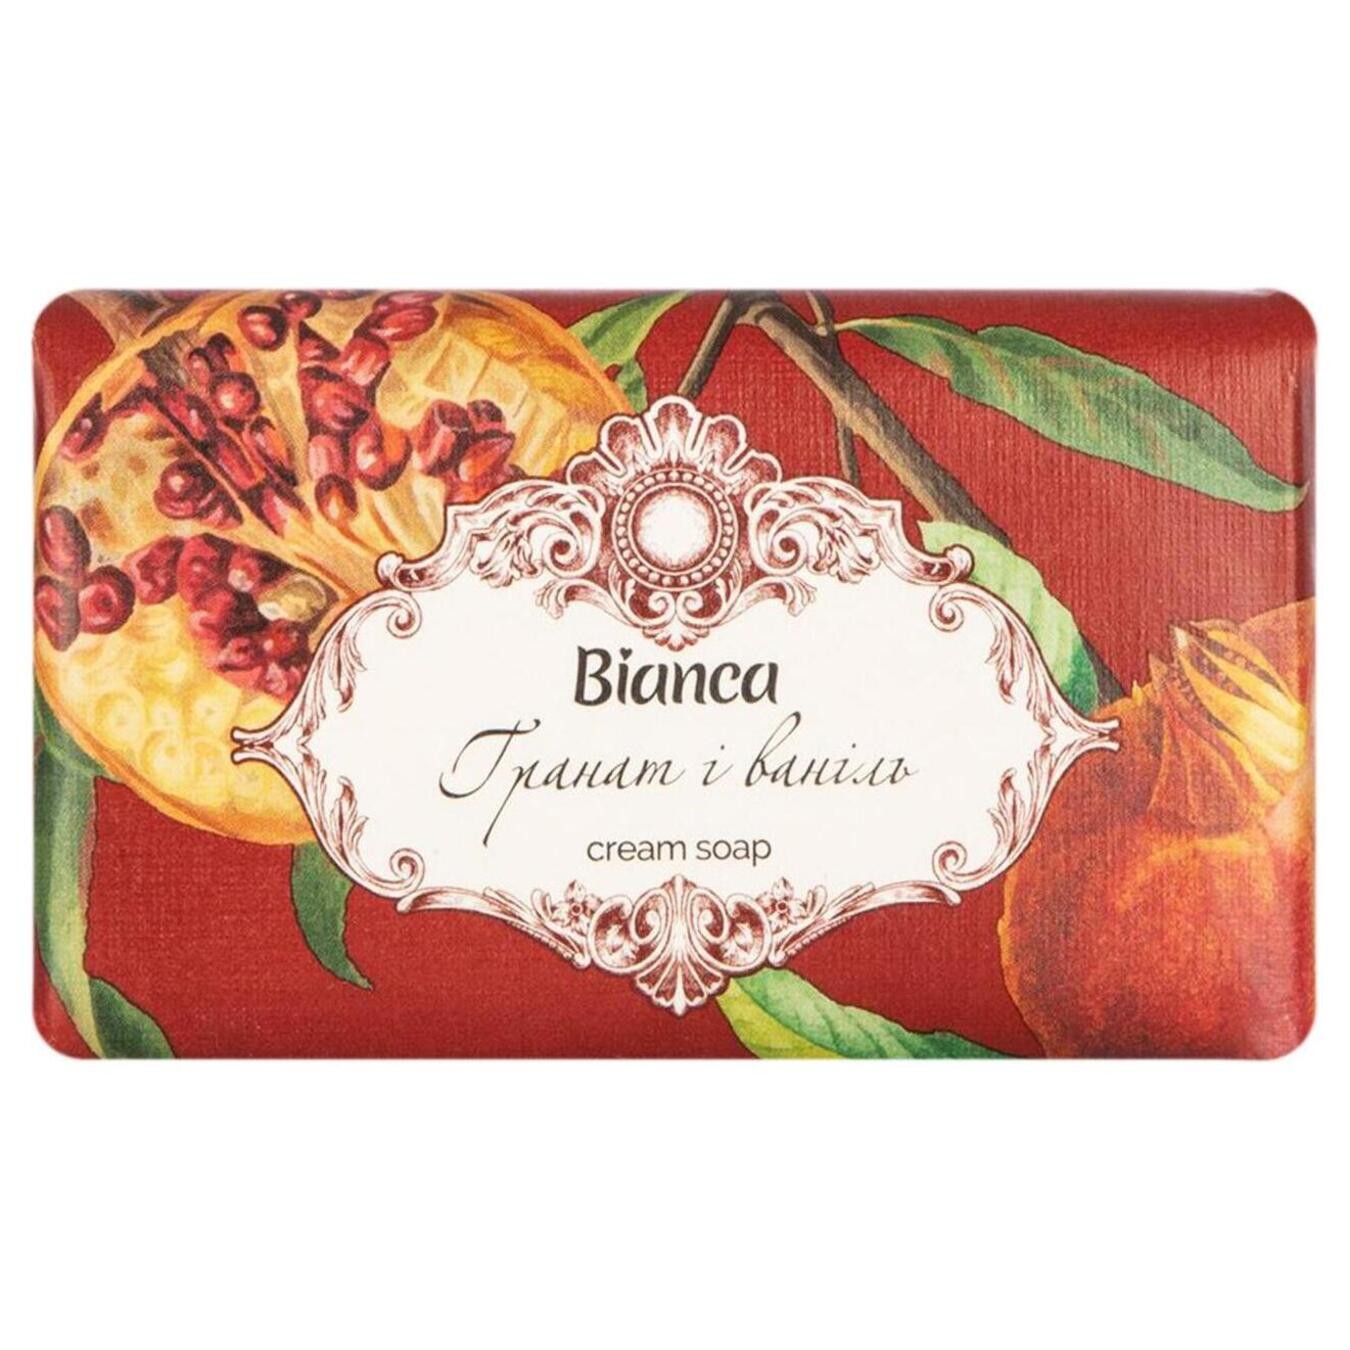 Cream-soap Bianca cosmetic pomegranate and vanilla 200g